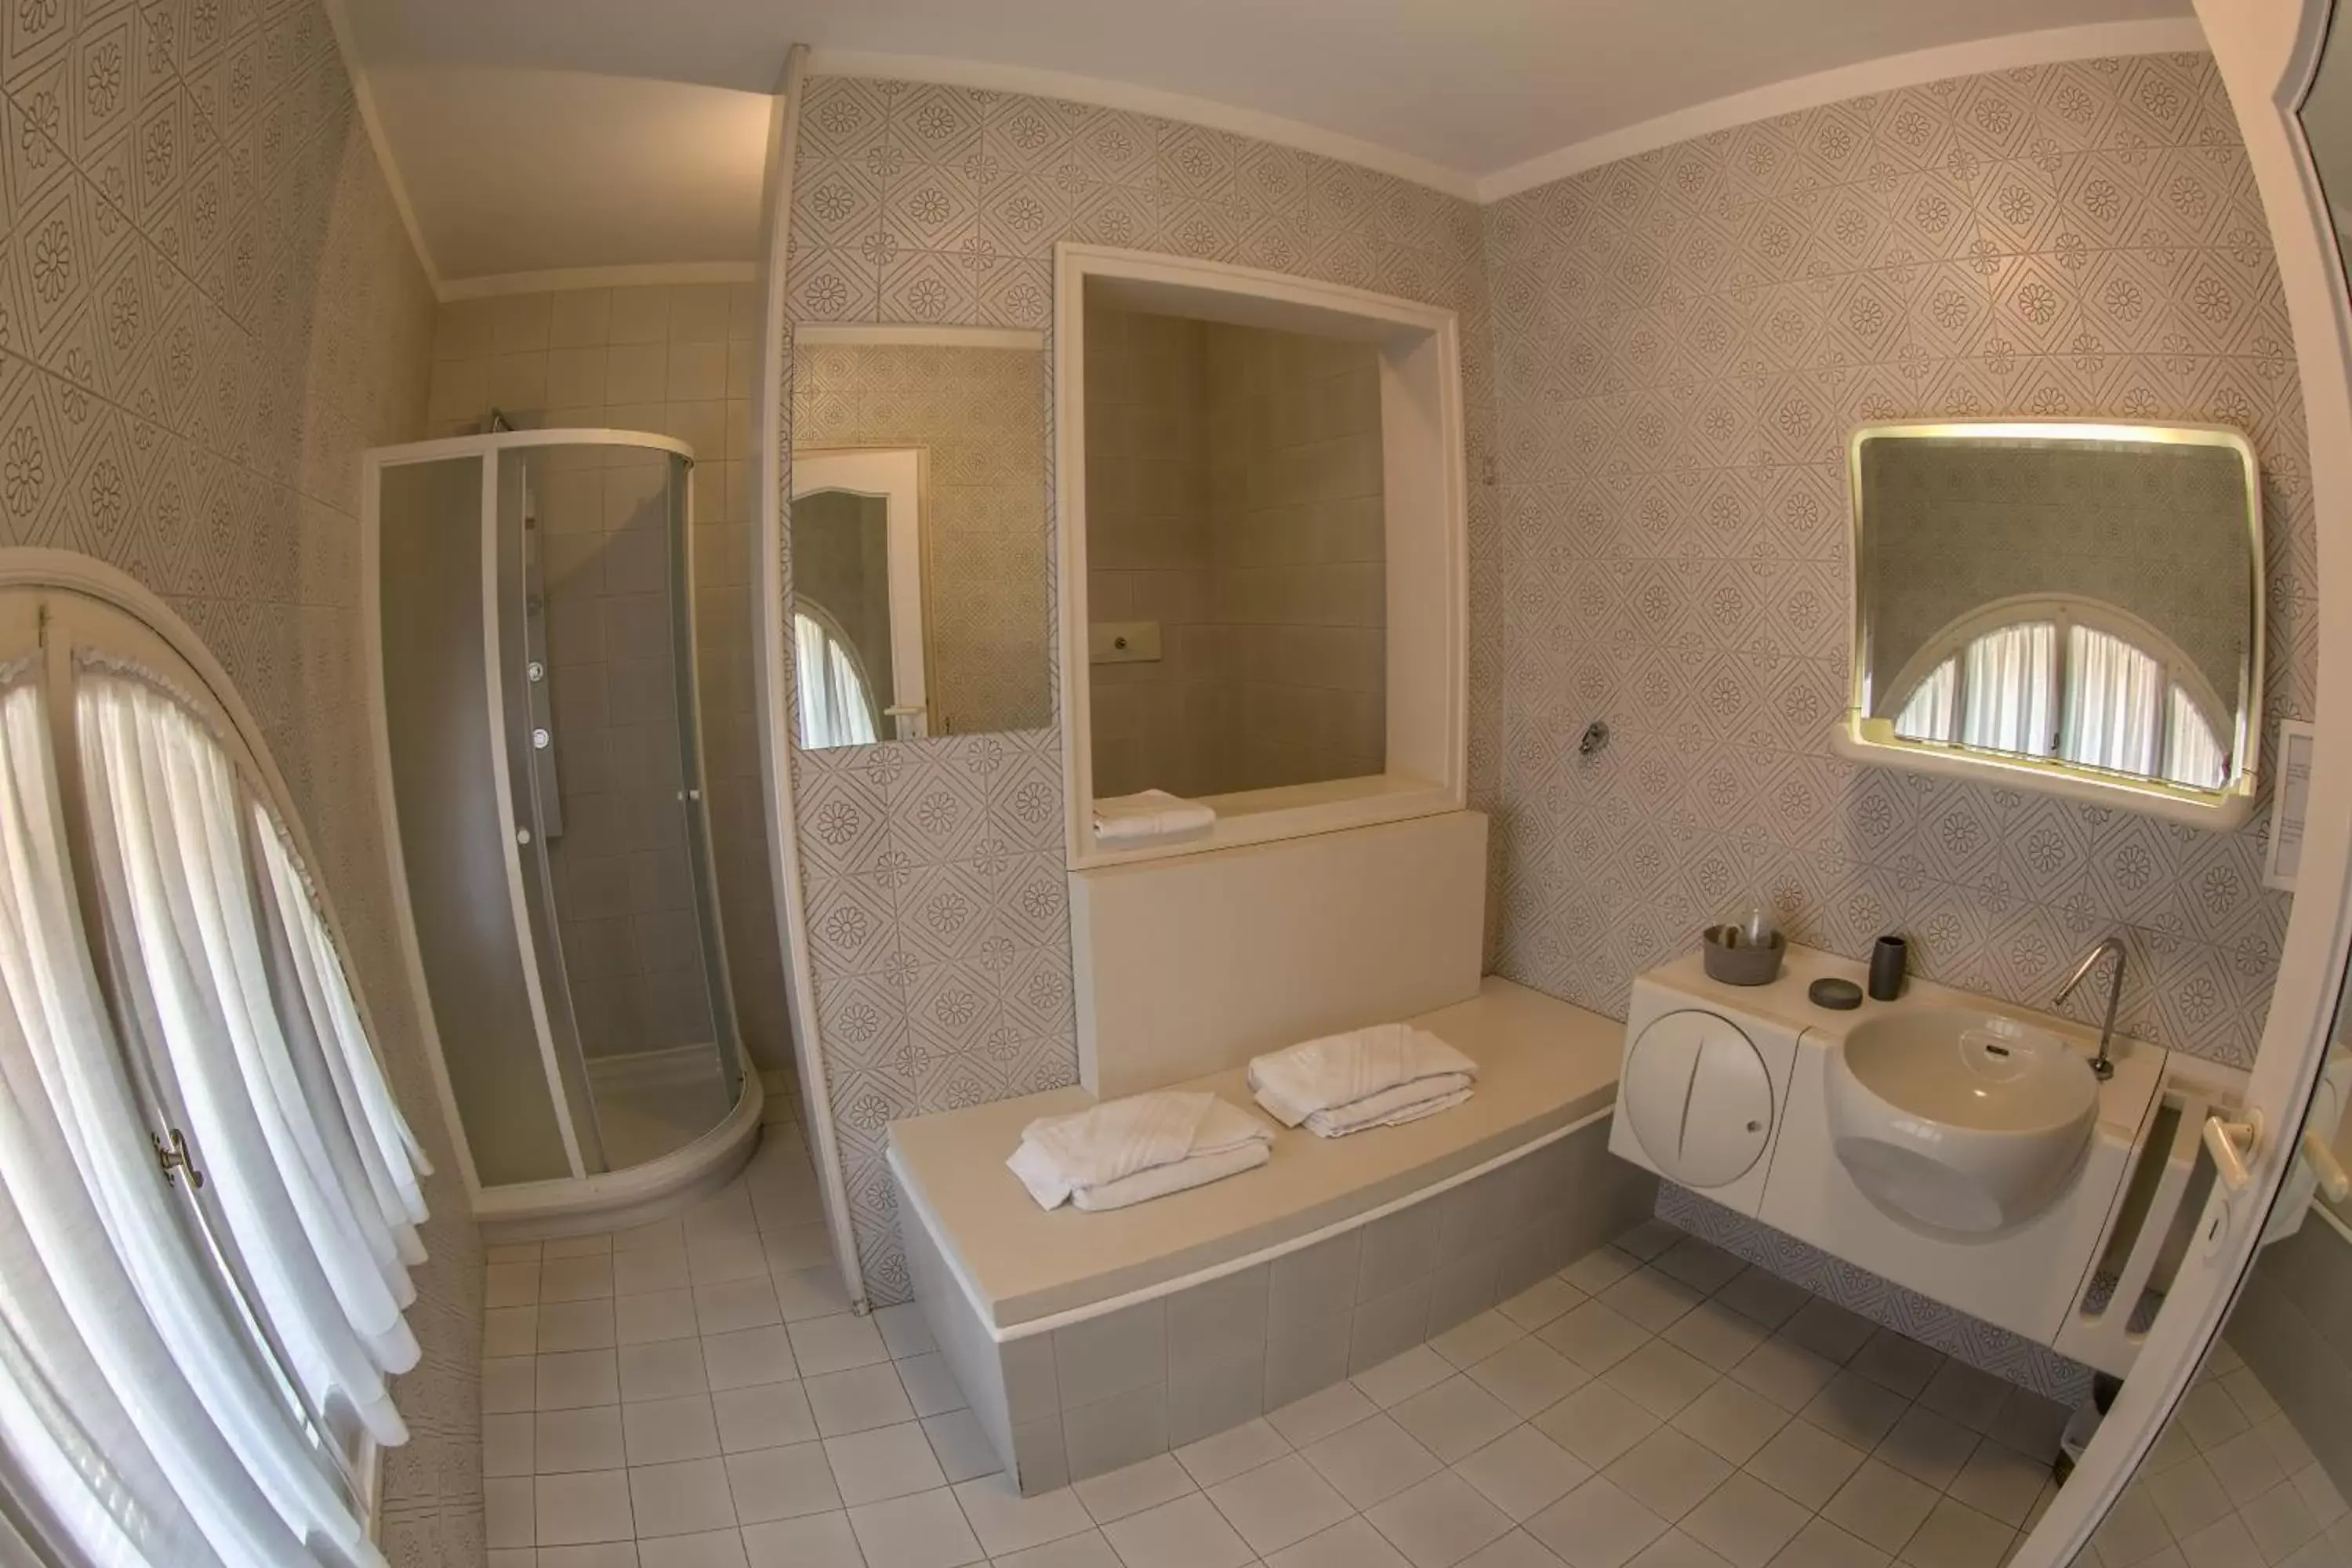 Other, Bathroom in Ai Giardini di San Vitale